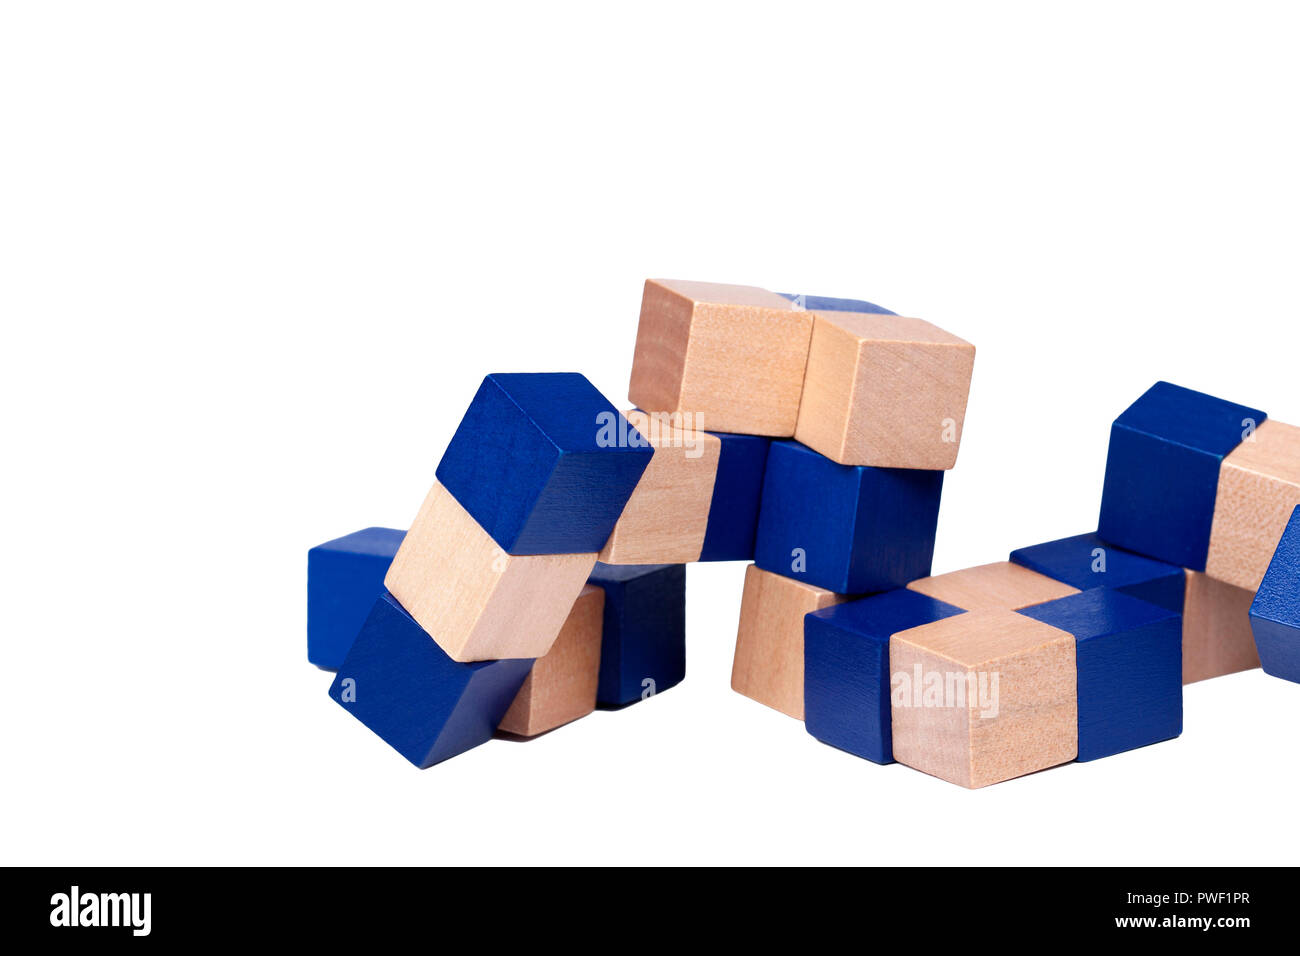 L'esprit complexe puzzle en bois bleu challanging, cubes formant un serpent isolé sur fond blanc Banque D'Images